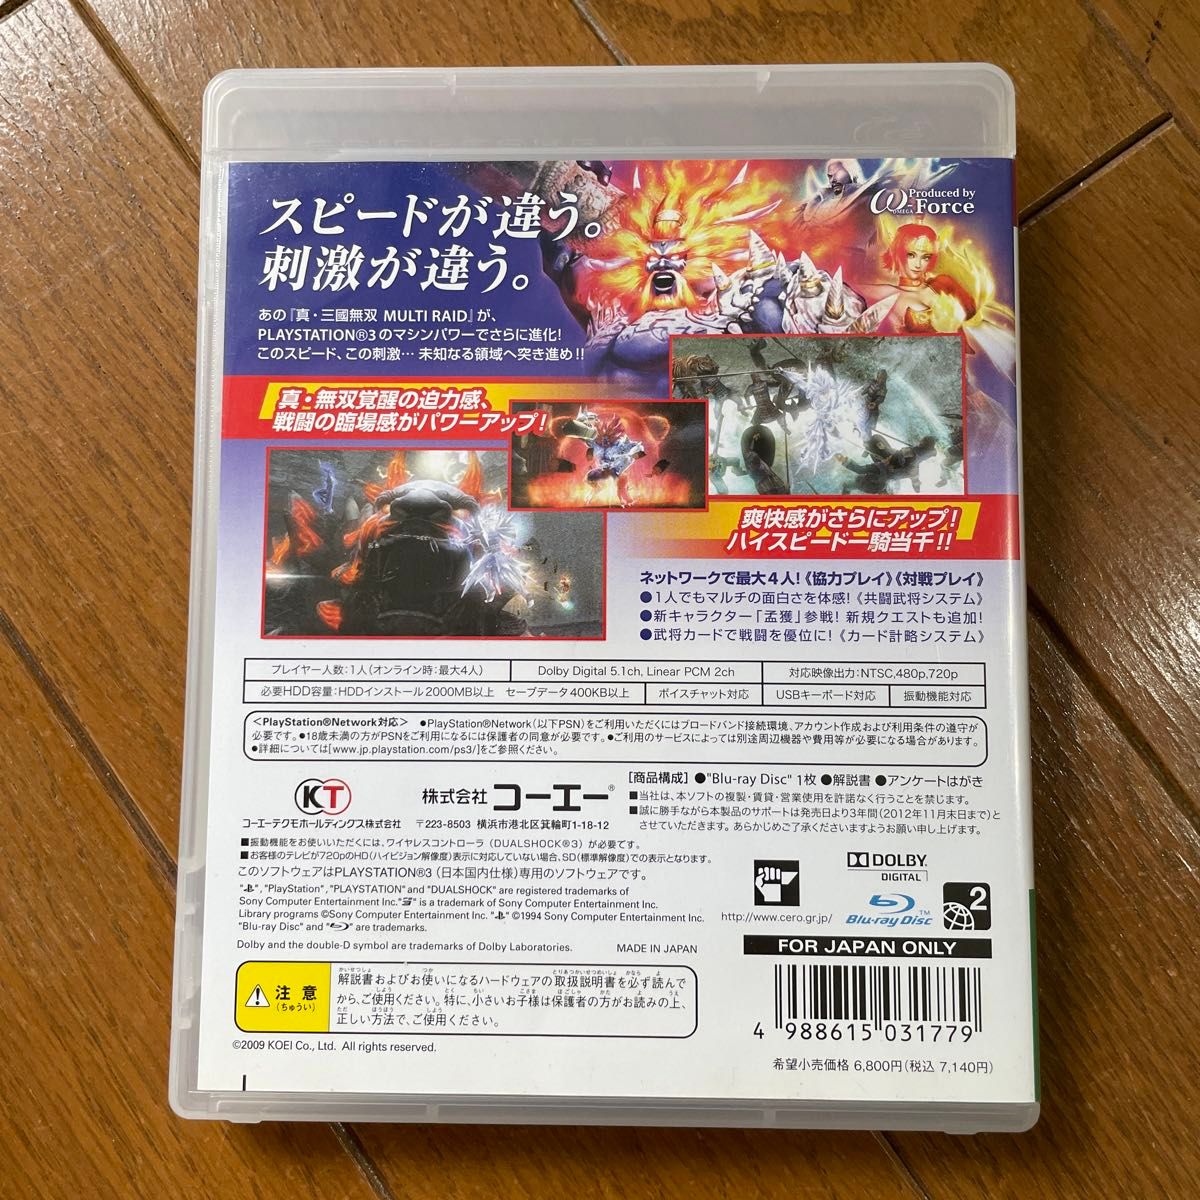 【PS3】 真・三國無双 MULTI RAID Special